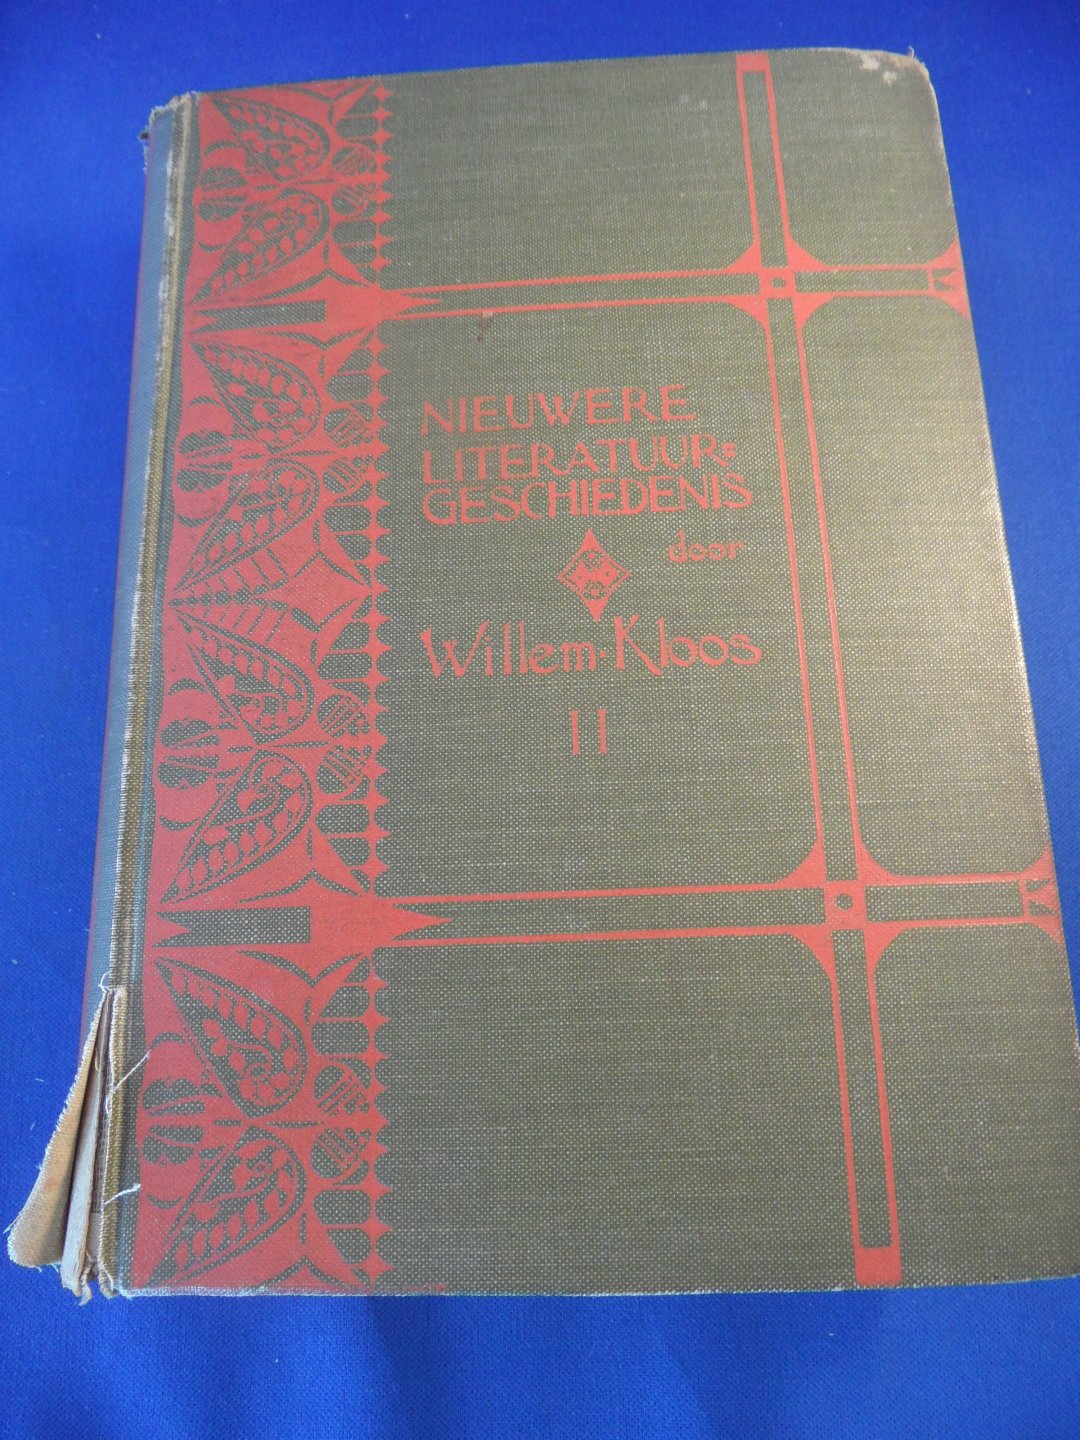 Kloos, Willem - Nieuwere literatuur-geschiedenis. Deel I en II samen